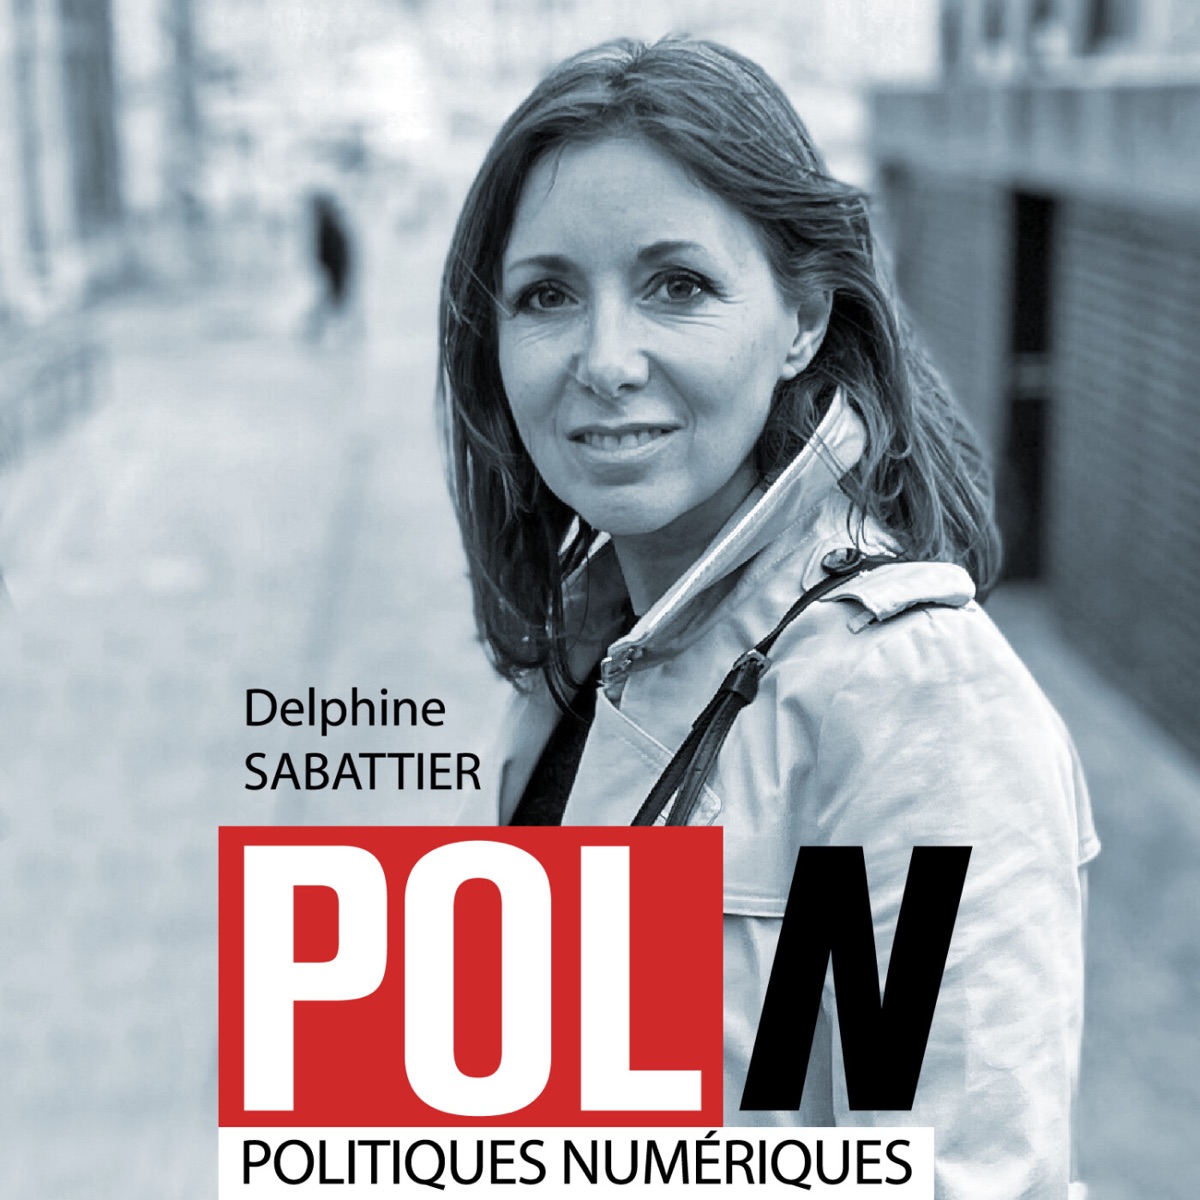 POLITIQUES NUMERIQUES (POL/N) – Podcasts Français